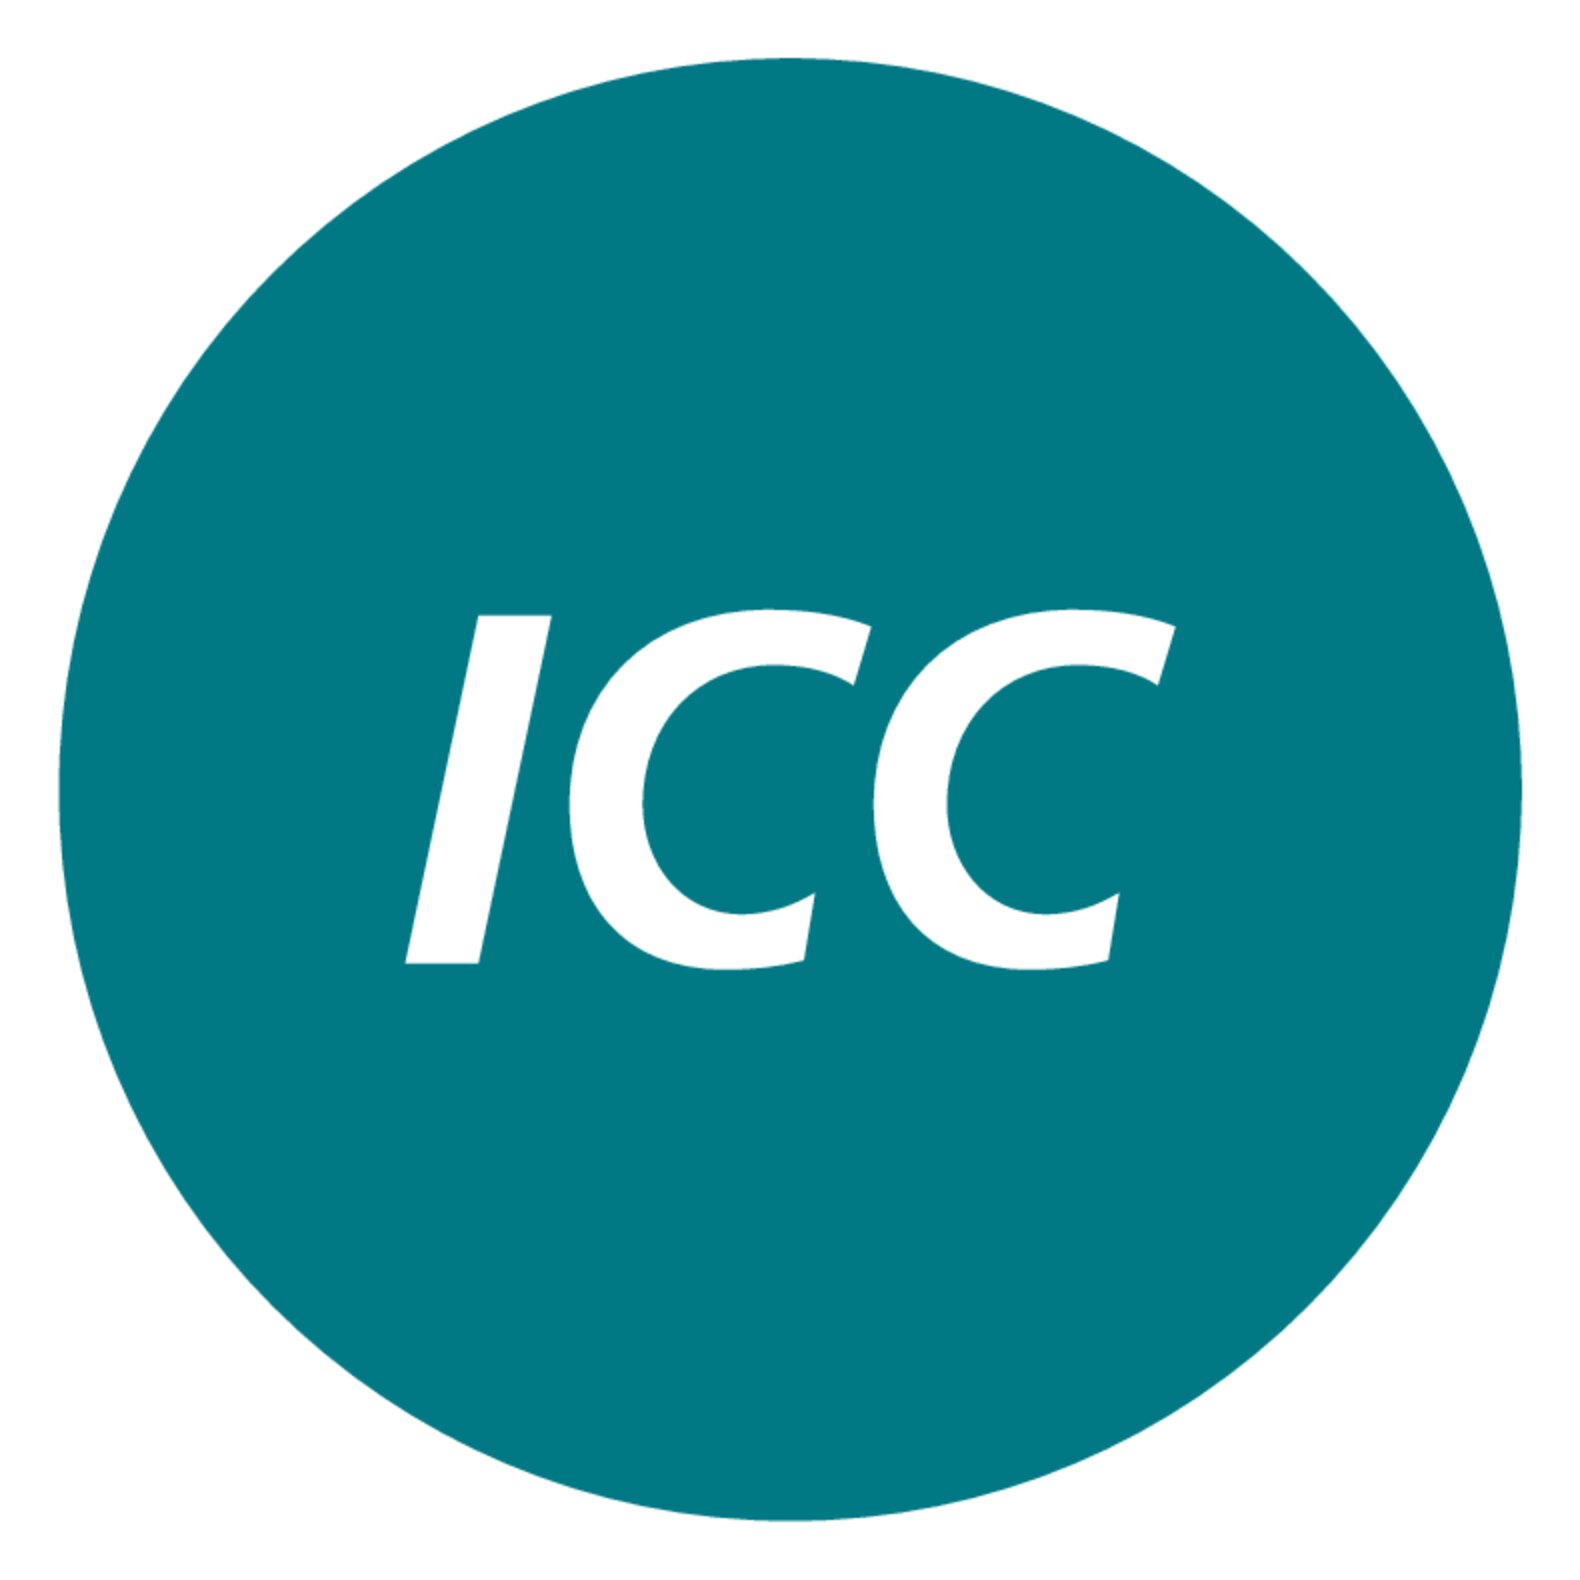 Control inteligente en cascada Icon ICC: ajuste automático y autooptimizado de los parámetros de control